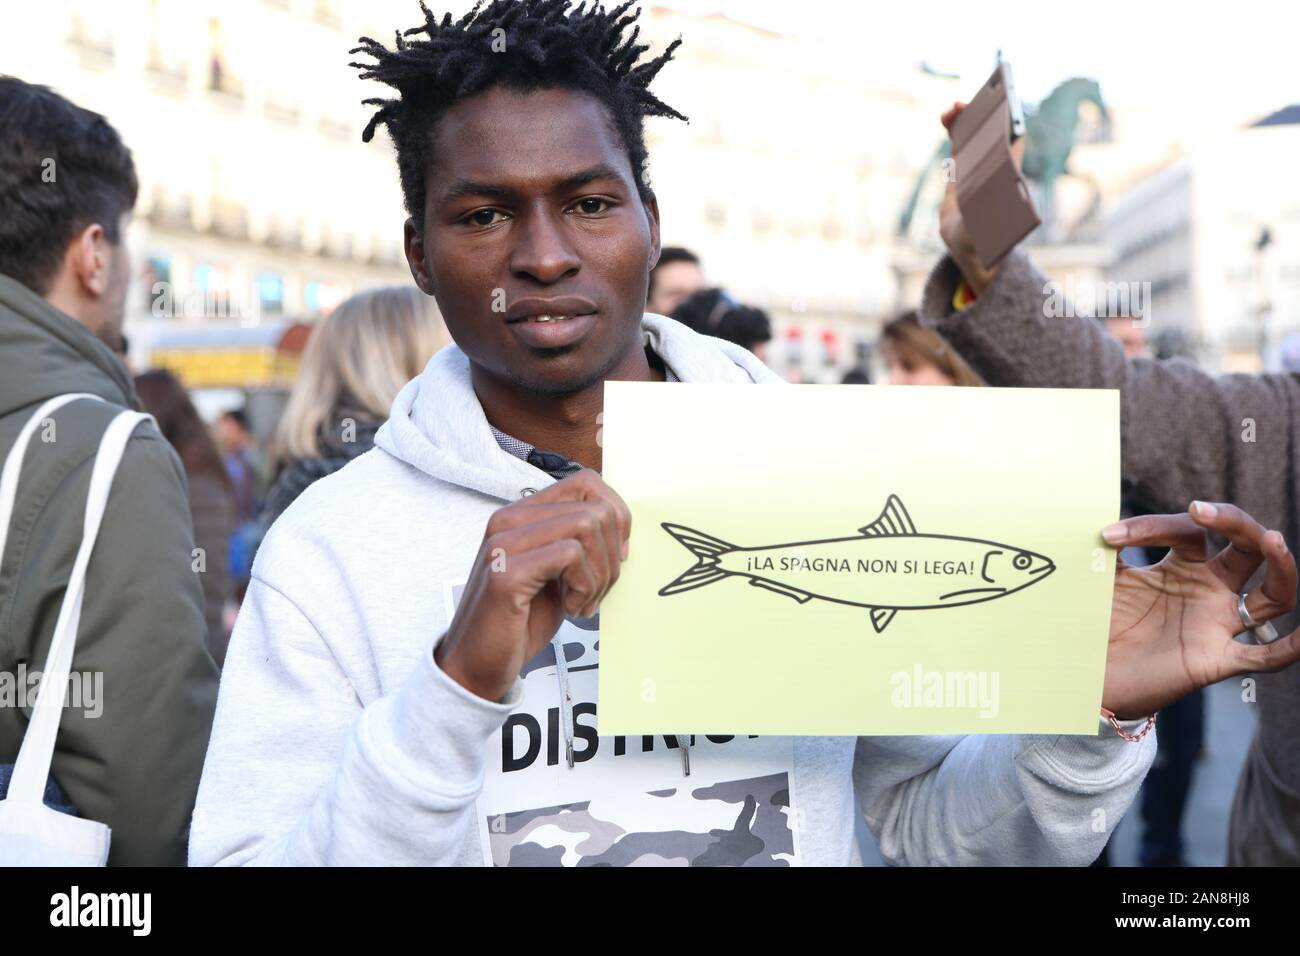 La sardina movimento italiano, Madrid 2019. Un pesce di carta con uno slogan antifascista Foto Stock